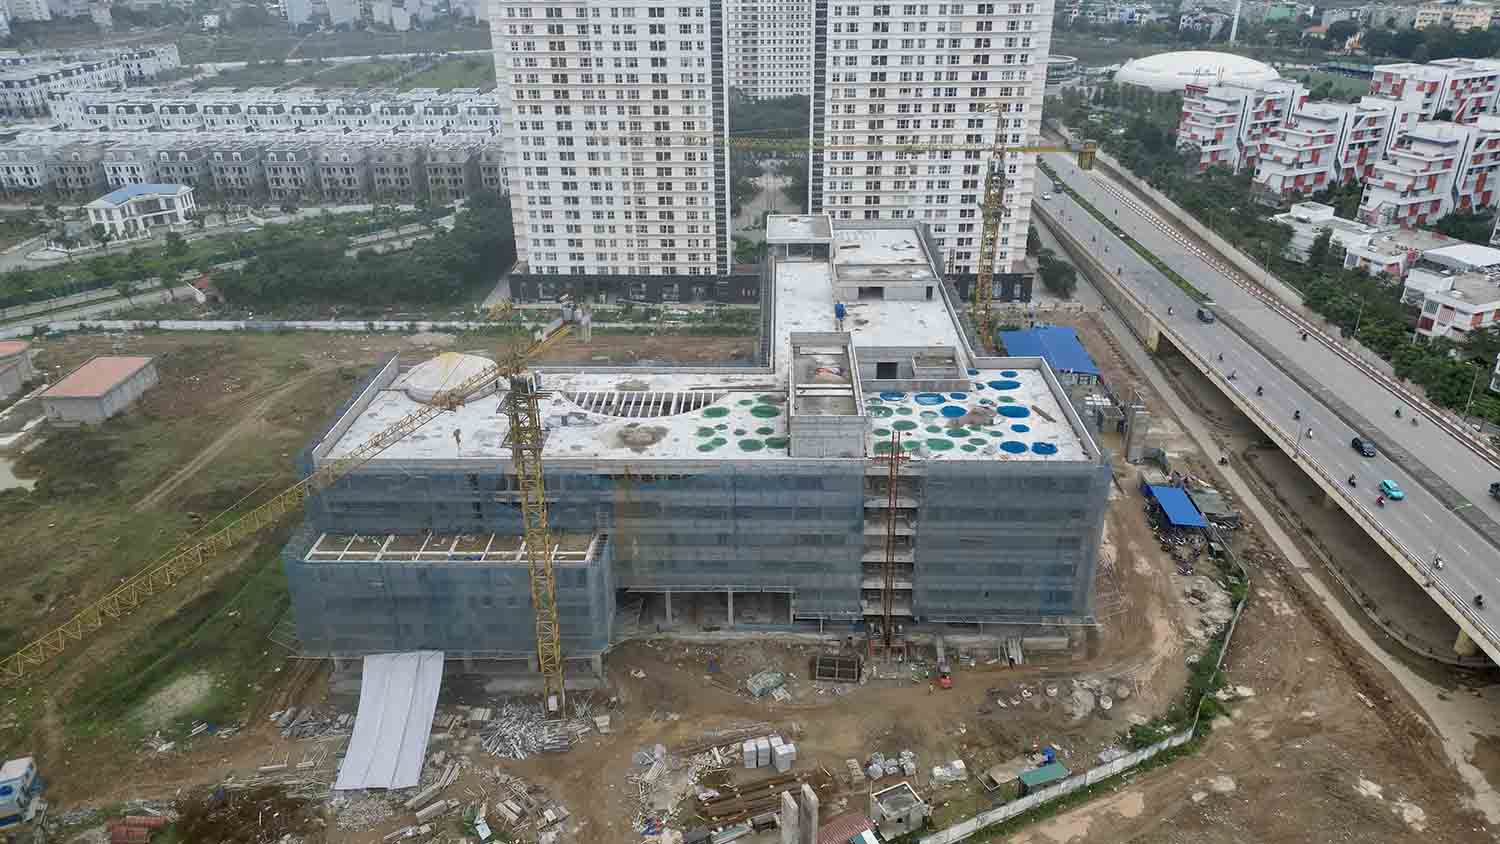 Bệnh viện Nhi Hà Nội đang xây dựng. Ảnh: H.Chánh